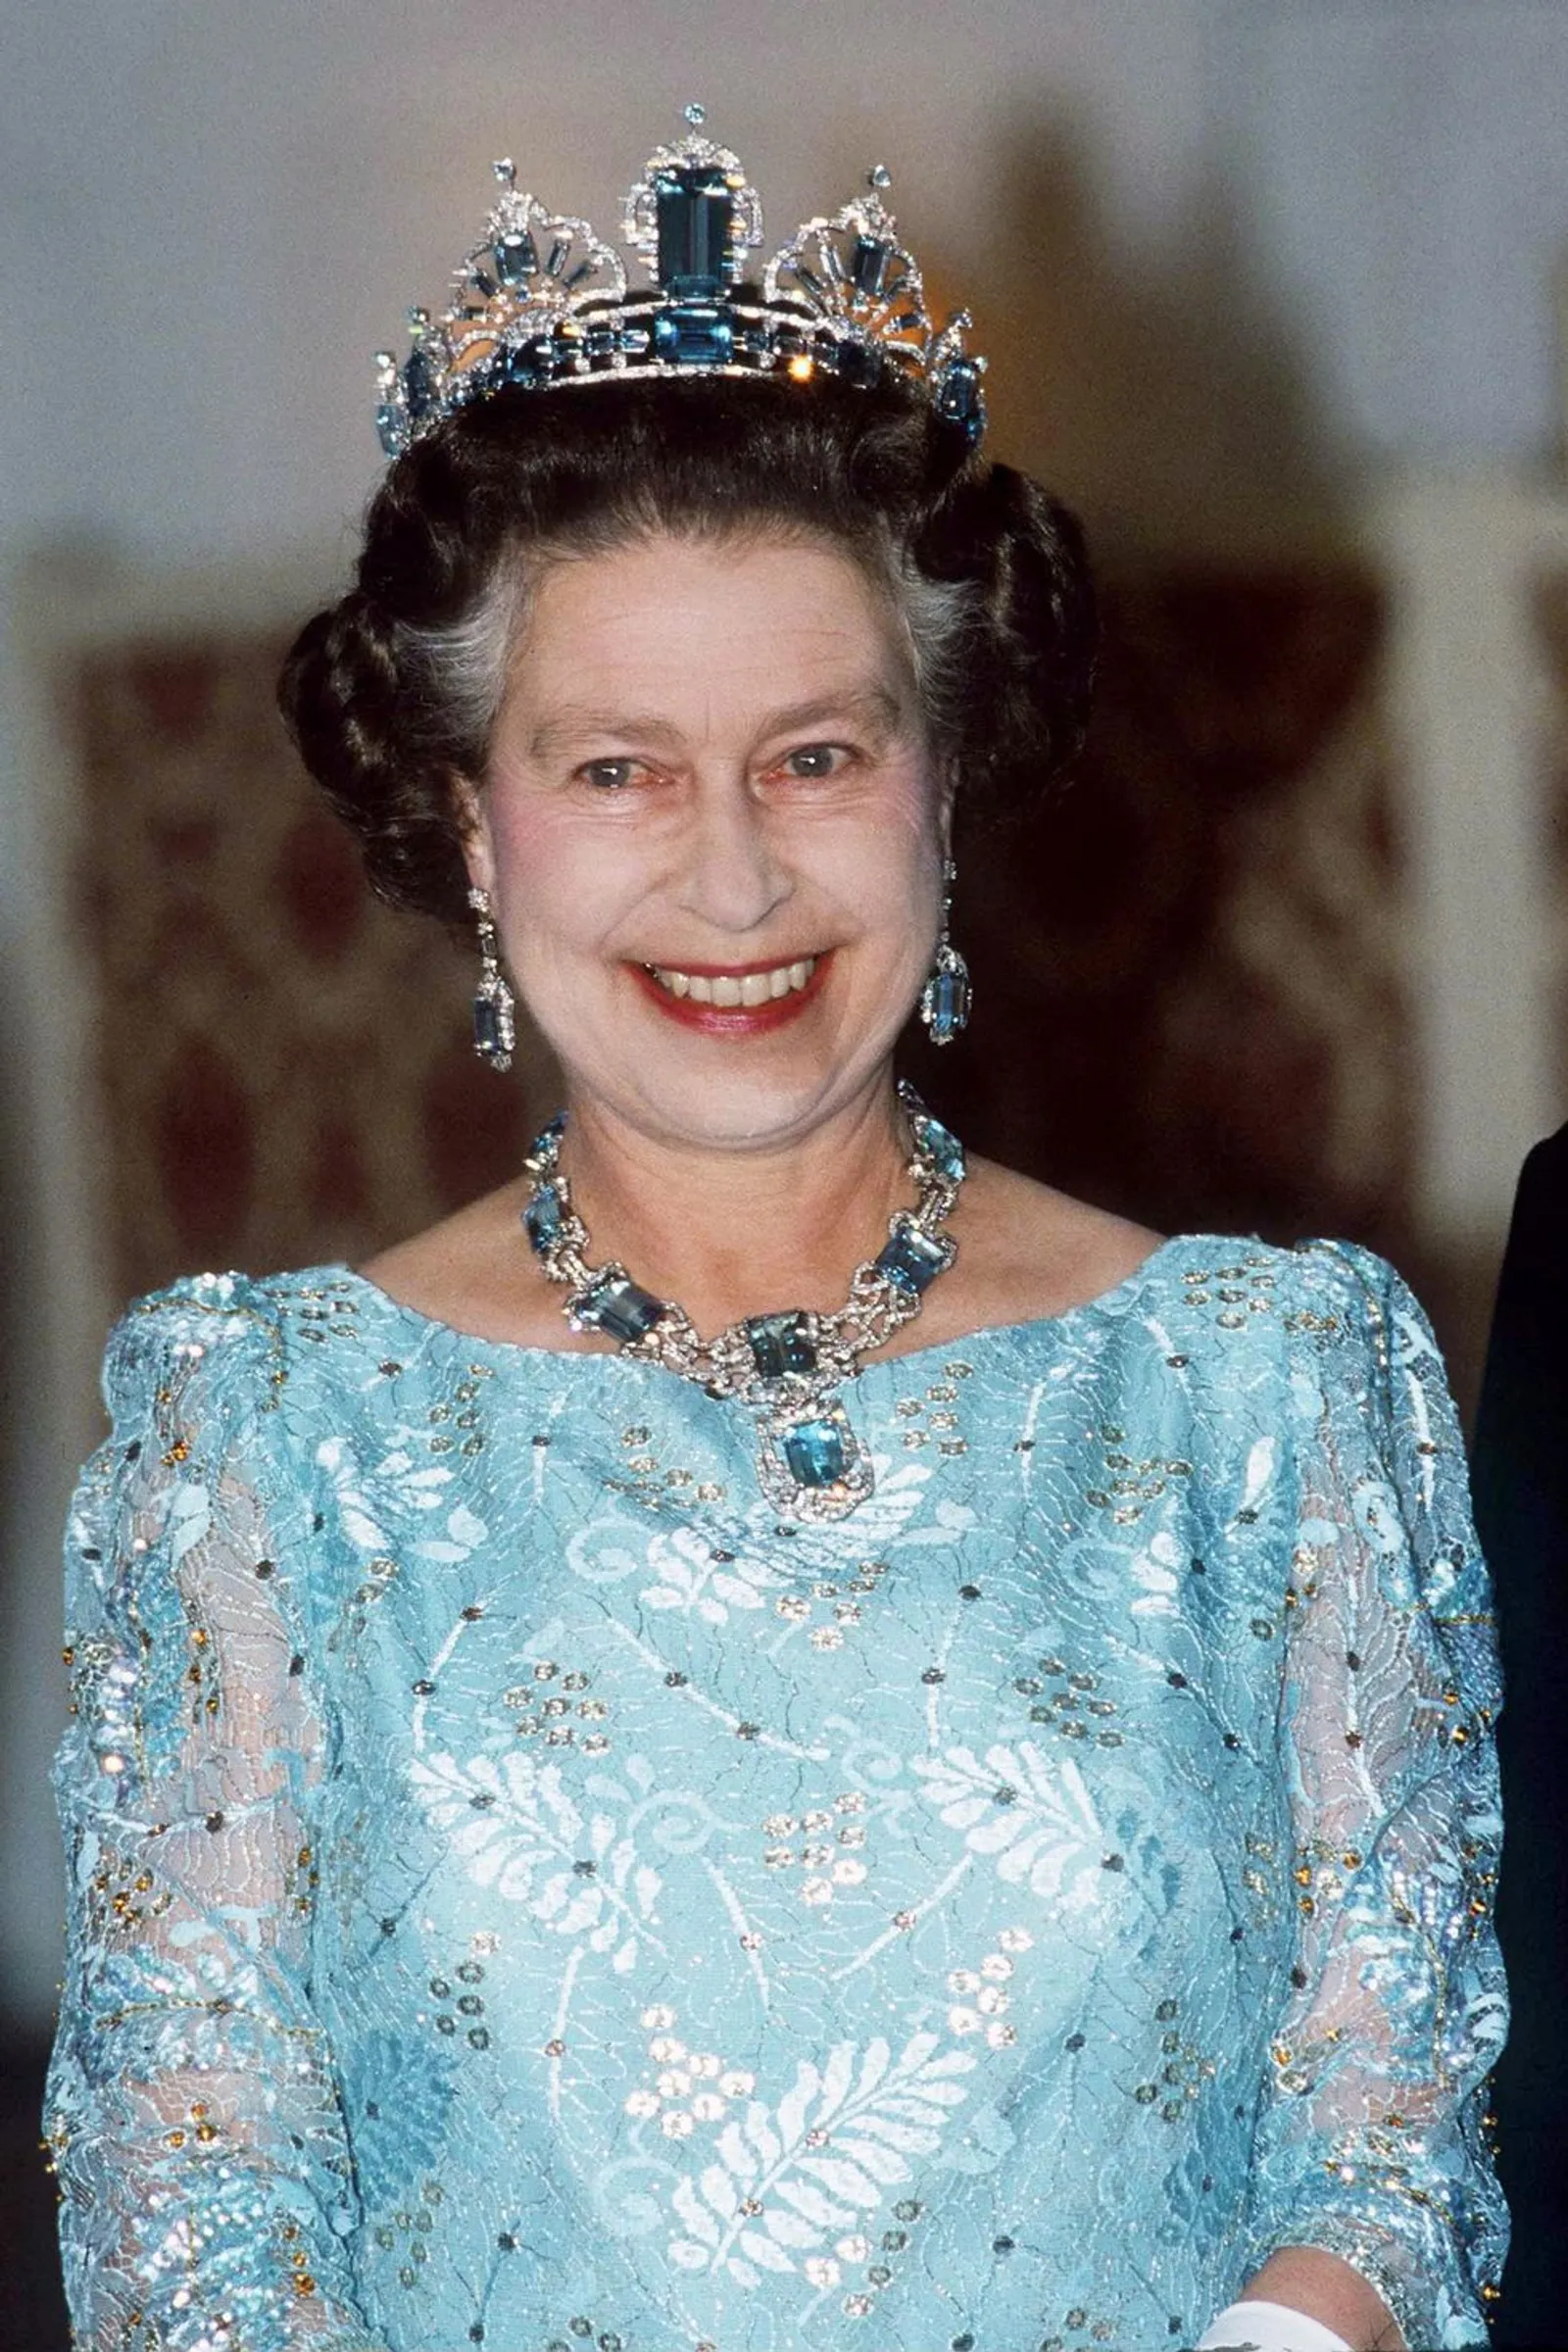 9 Mahkota Mewah yang Pernah Dipakai Ratu Elizabeth II Semasa Hidup